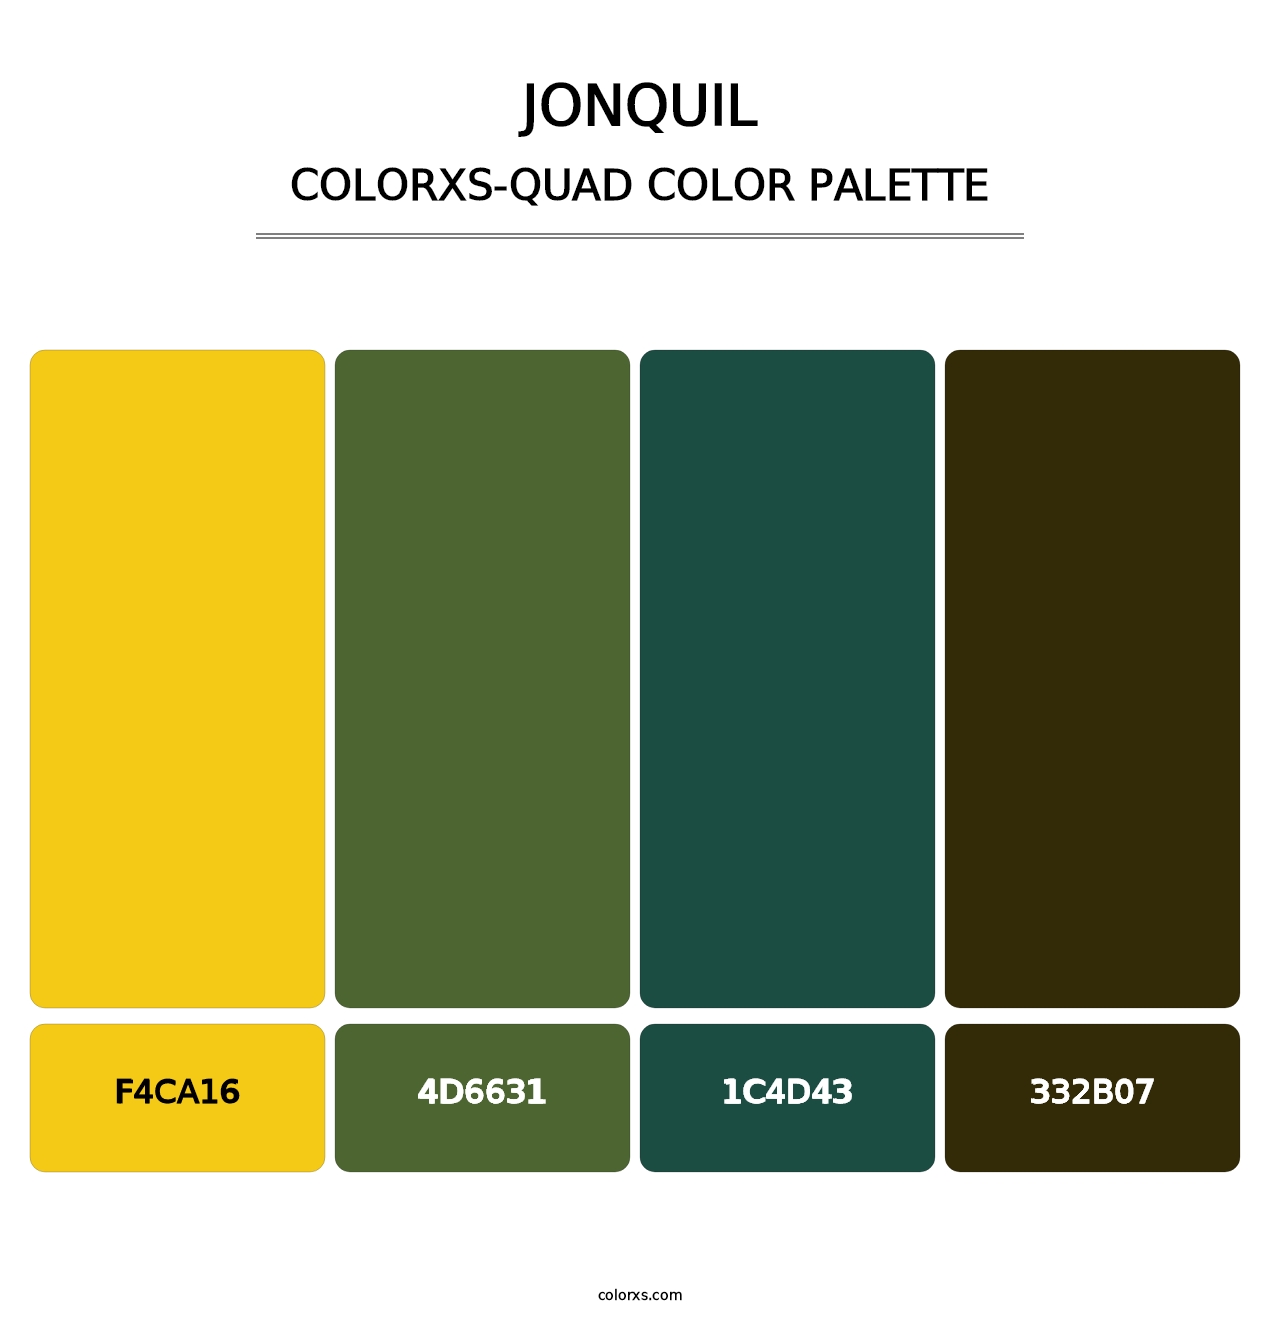 Jonquil - Colorxs Quad Palette